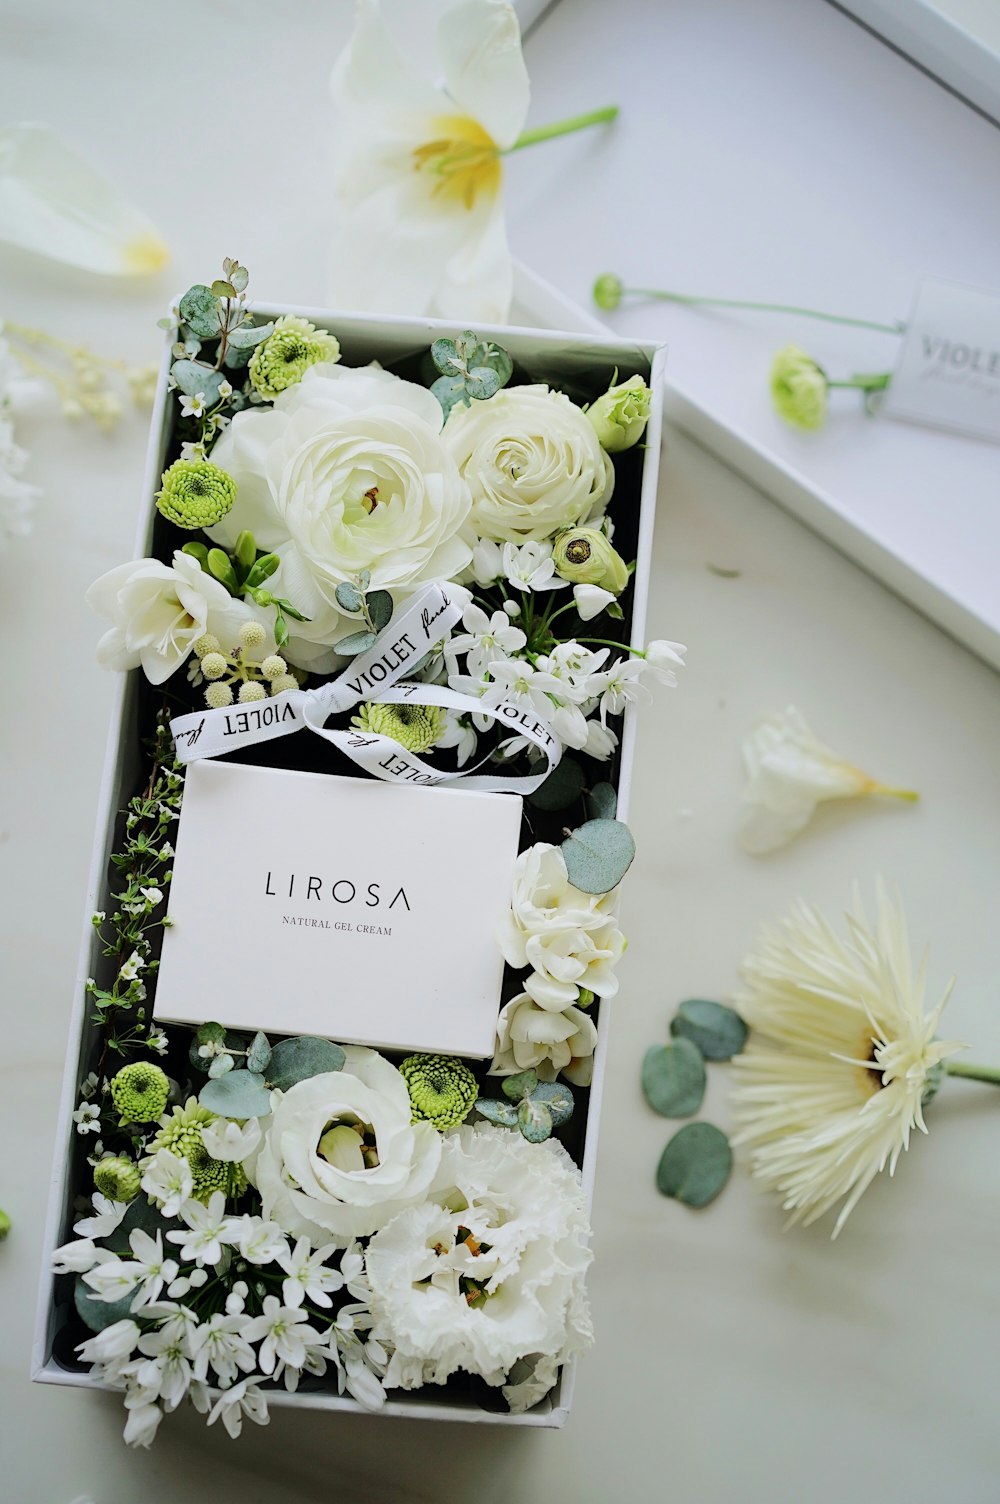 Lirosa flowers in box